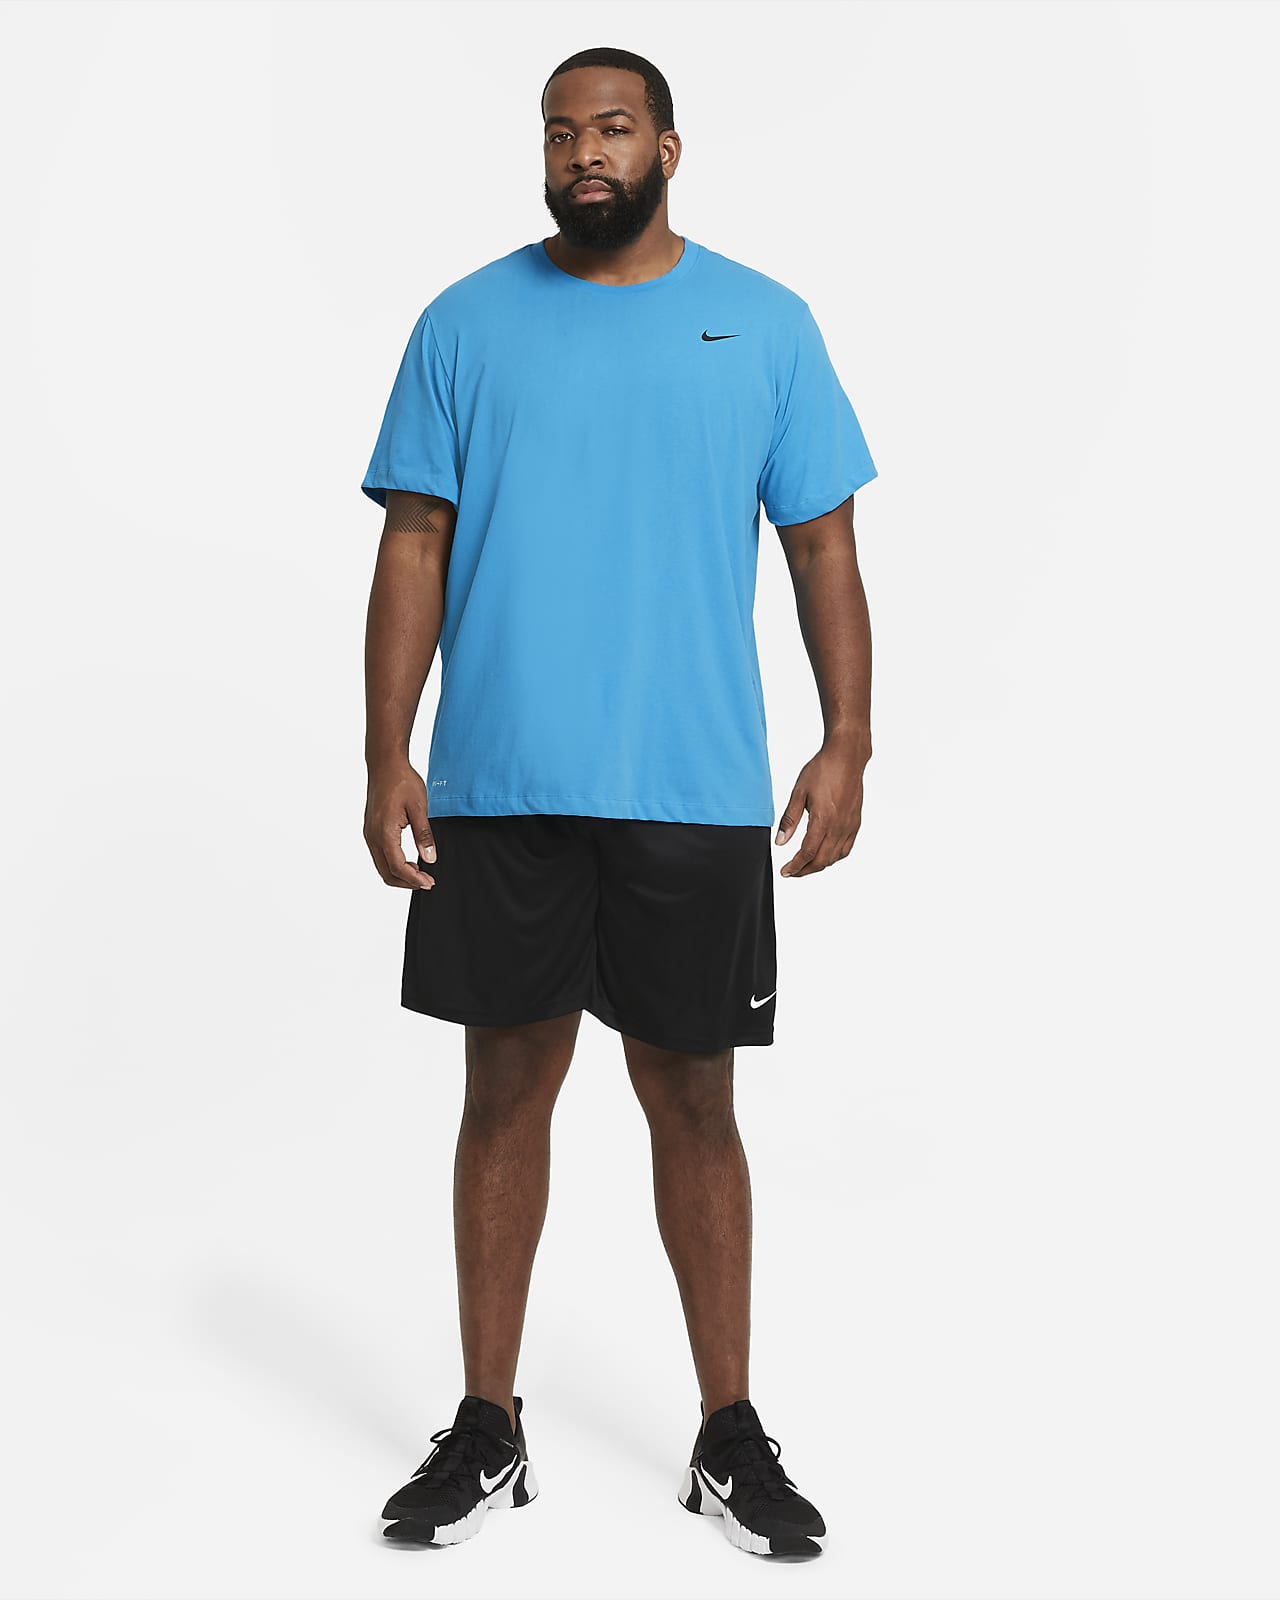 máquina Alas Cava Nike Dri-FIT Men's Fitness T-Shirt. Nike.com